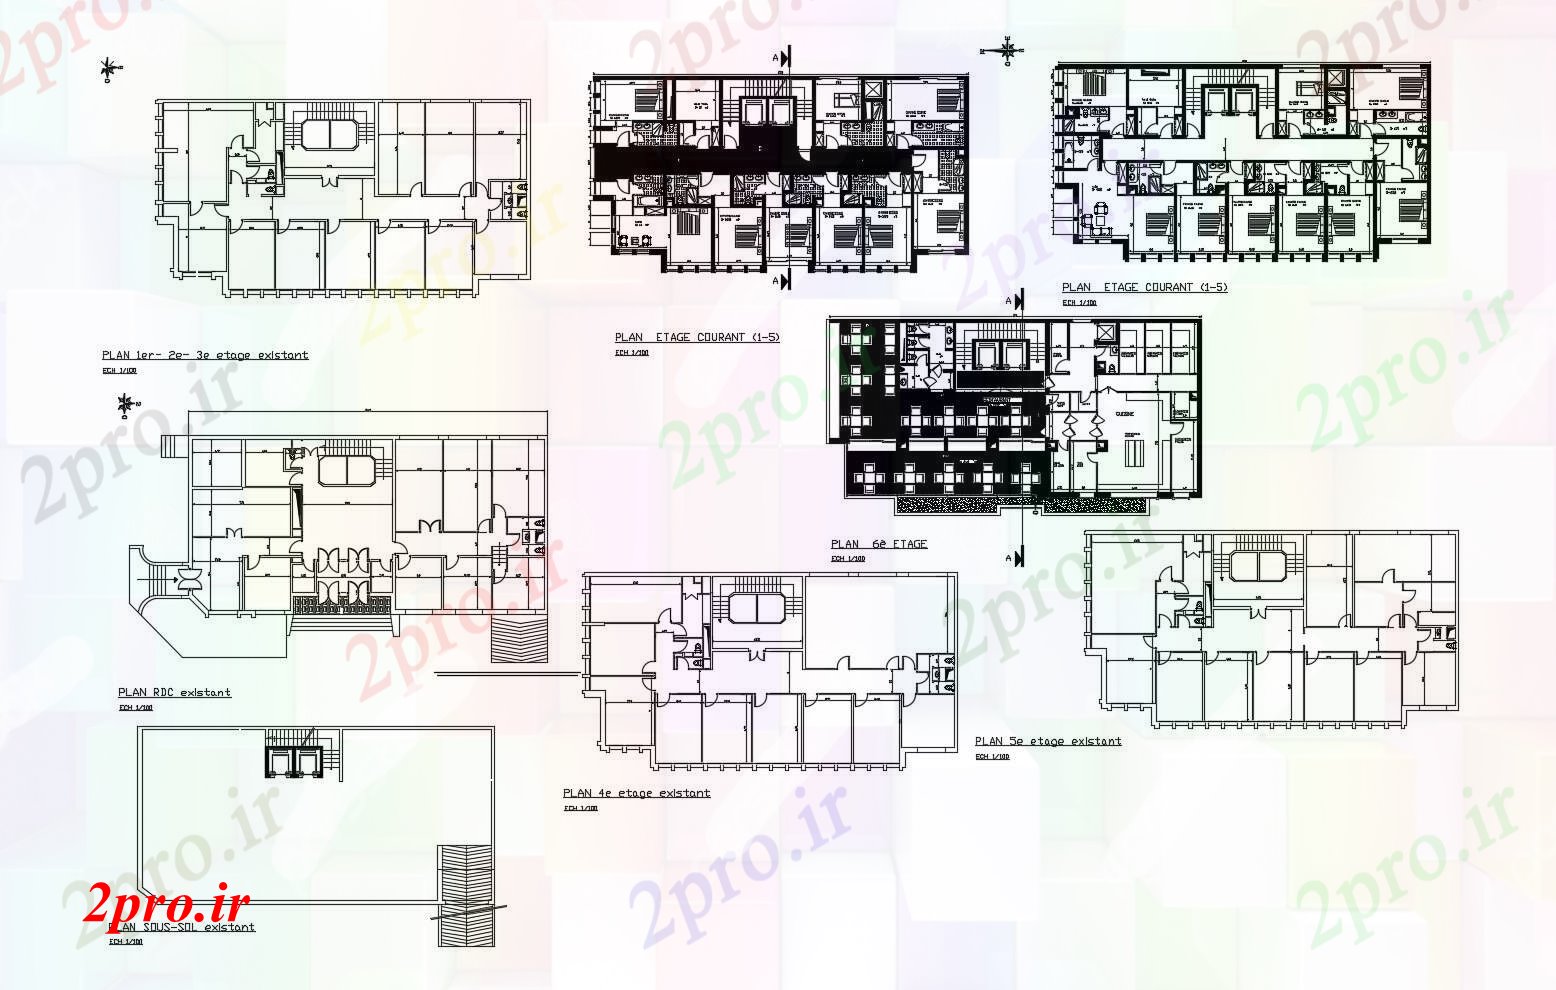 دانلود نقشه هتل - رستوران - اقامتگاه طراحی هتل با ابعاد جزئیات 14 در 27 متر (کد89810)